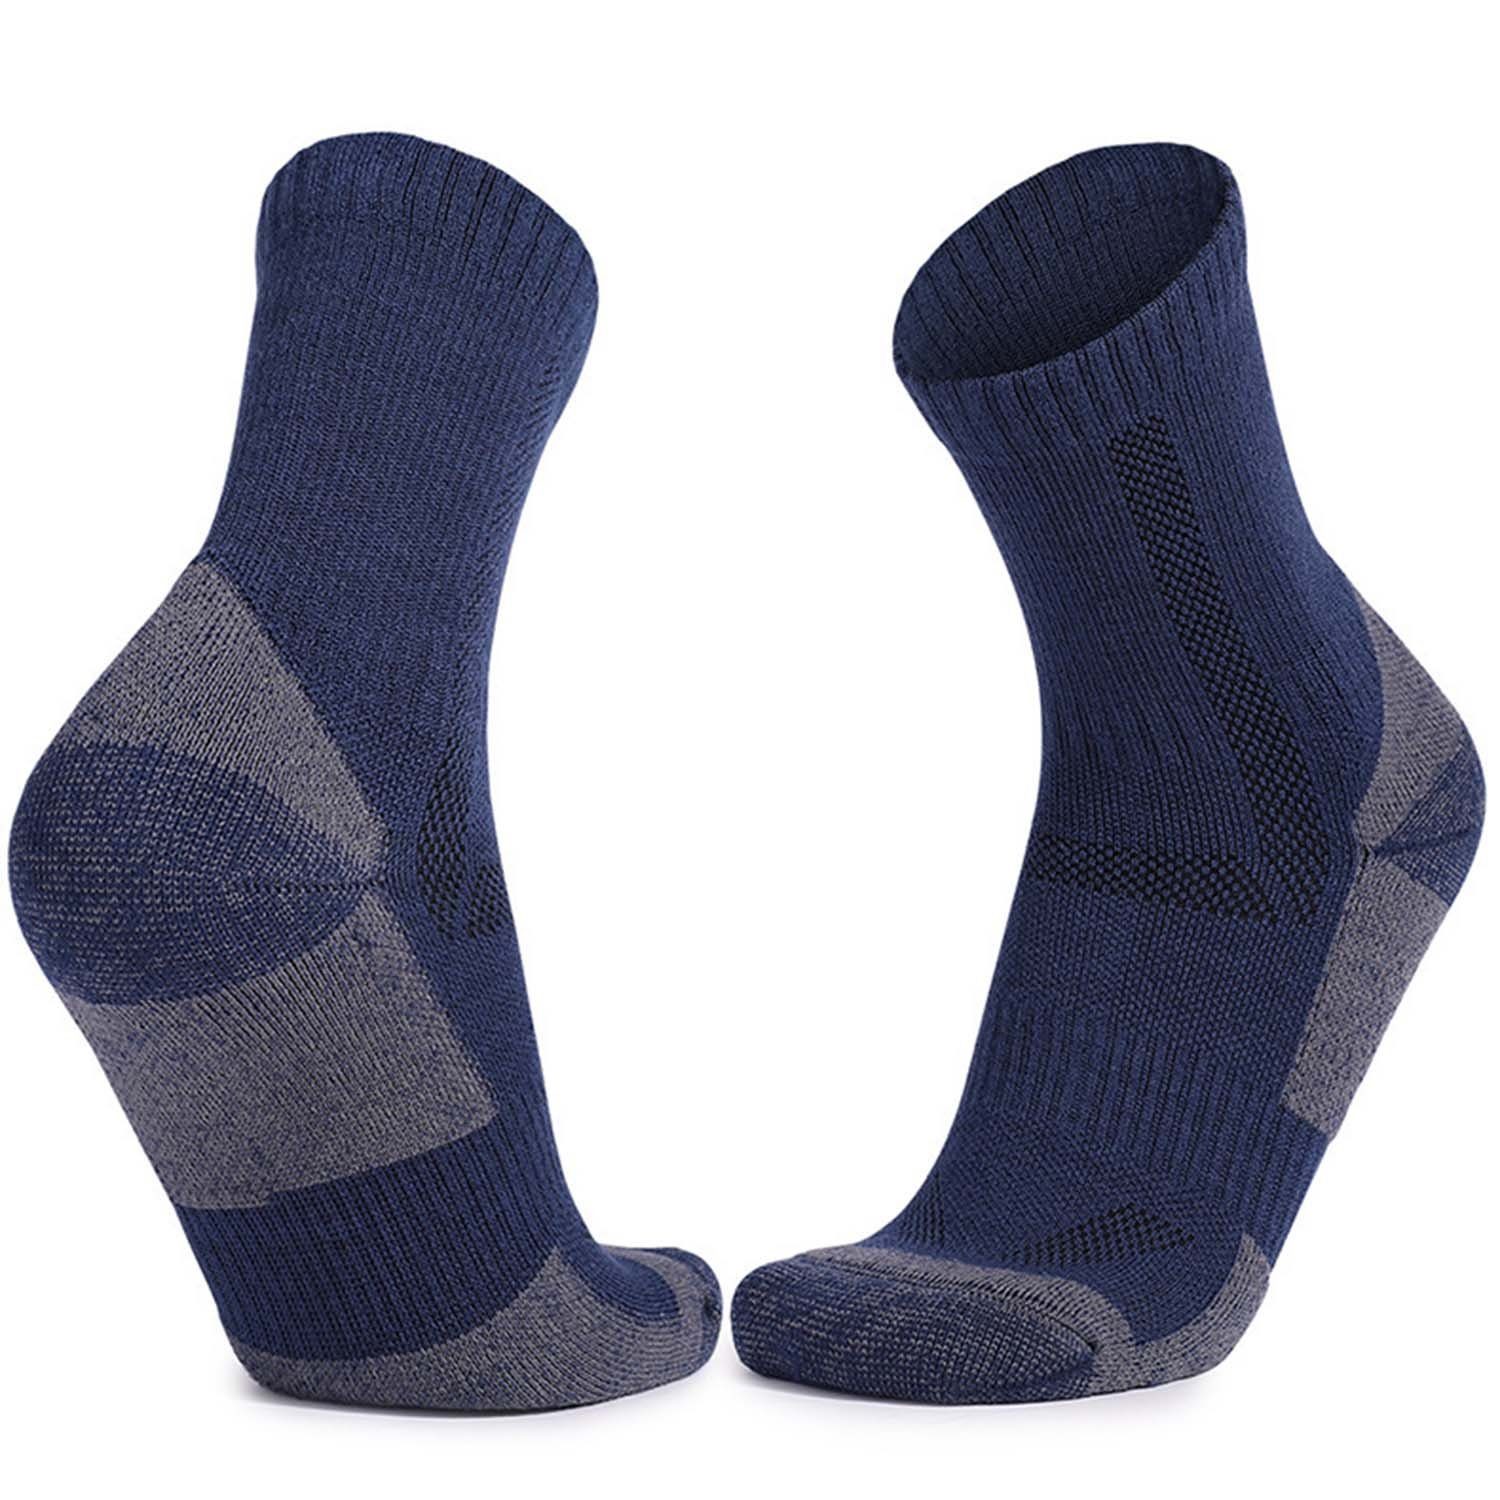 Paar 1 Winter Sportsocken Socken Herren Komfortsocken schweißabsorbierend Warme Dunkelblau Daisred rutschfest,